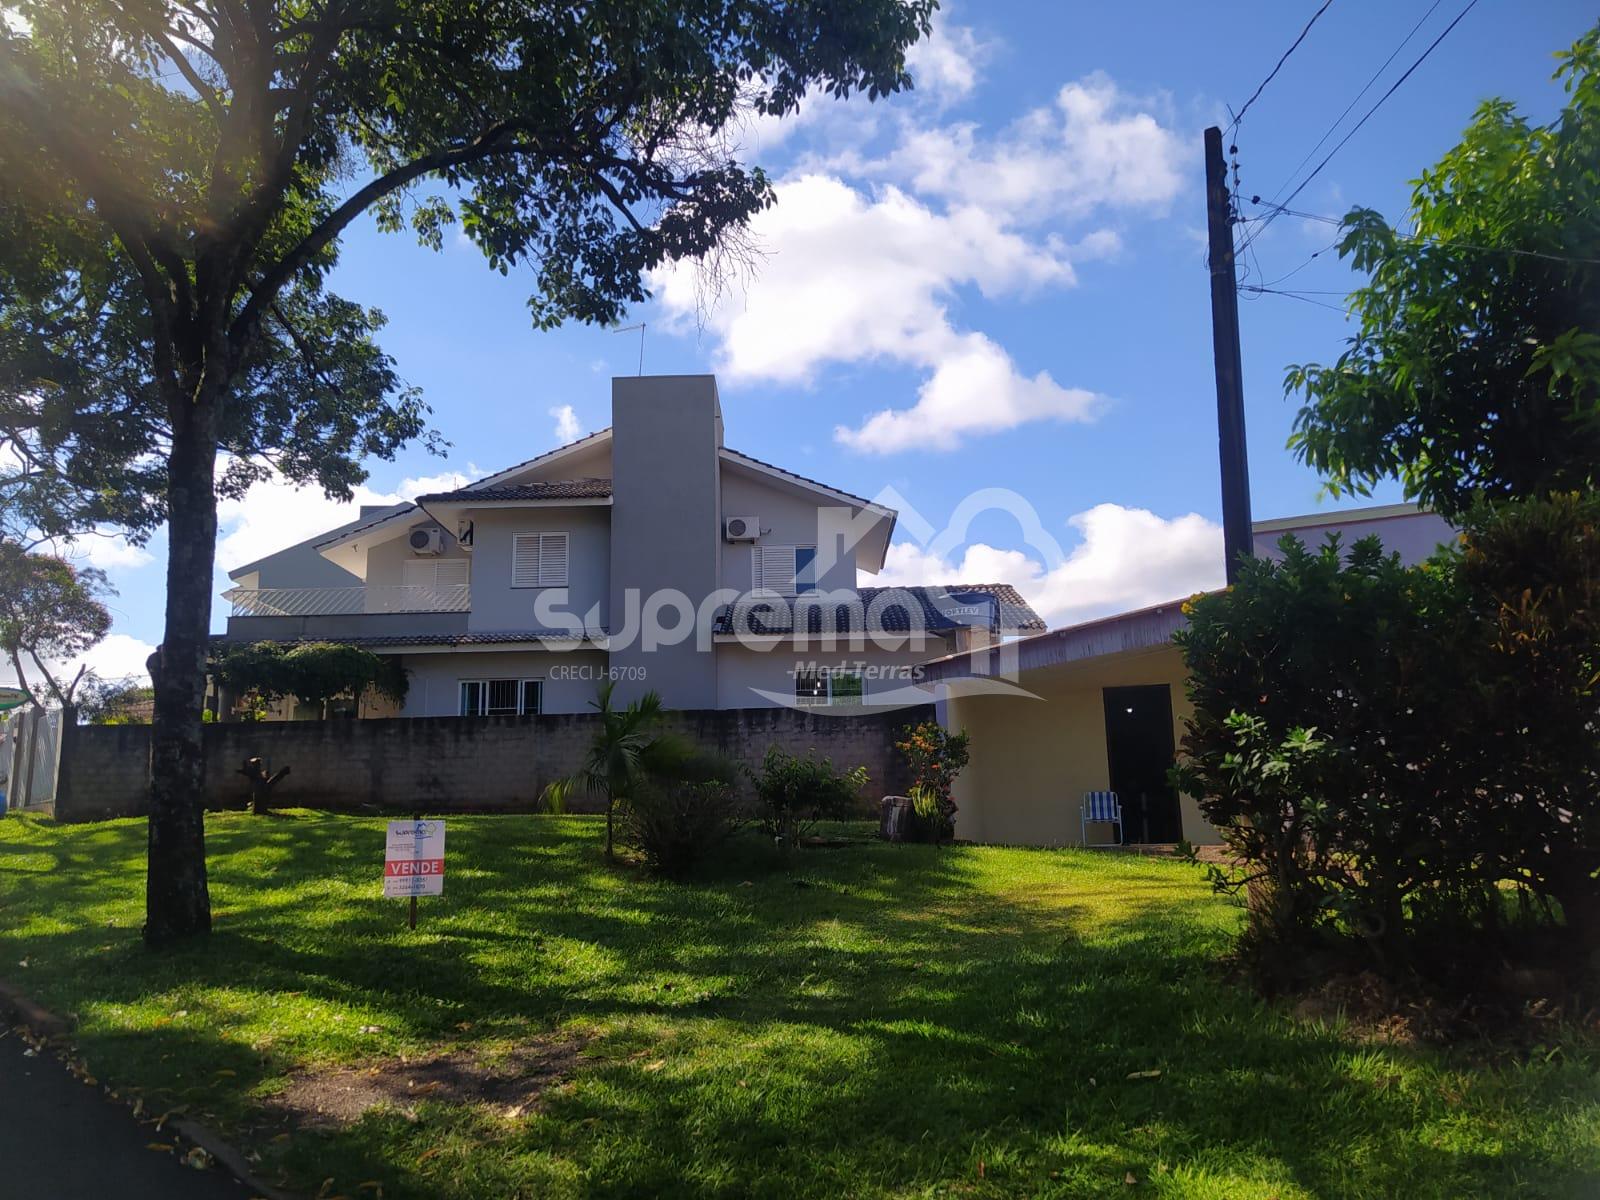 Suprema Imóveis em Medianeira Paraná